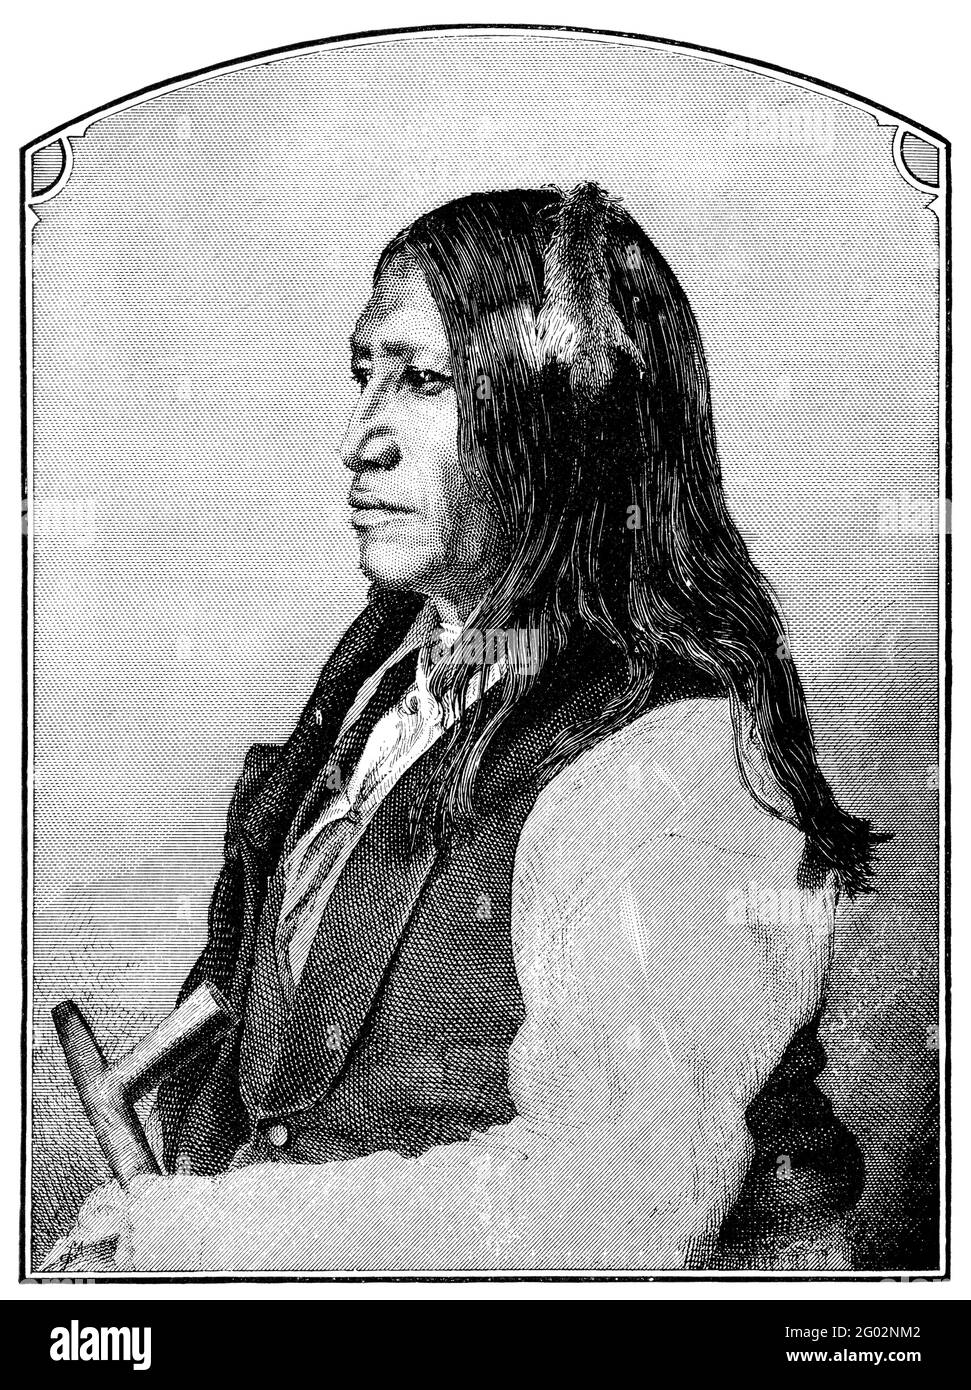 Une illustration gravée de la queue tachetée, un Indien américain natif et un chef des Sioux, tirée d'un livre victorien daté de 1880 qui n'est plus en copie Banque D'Images